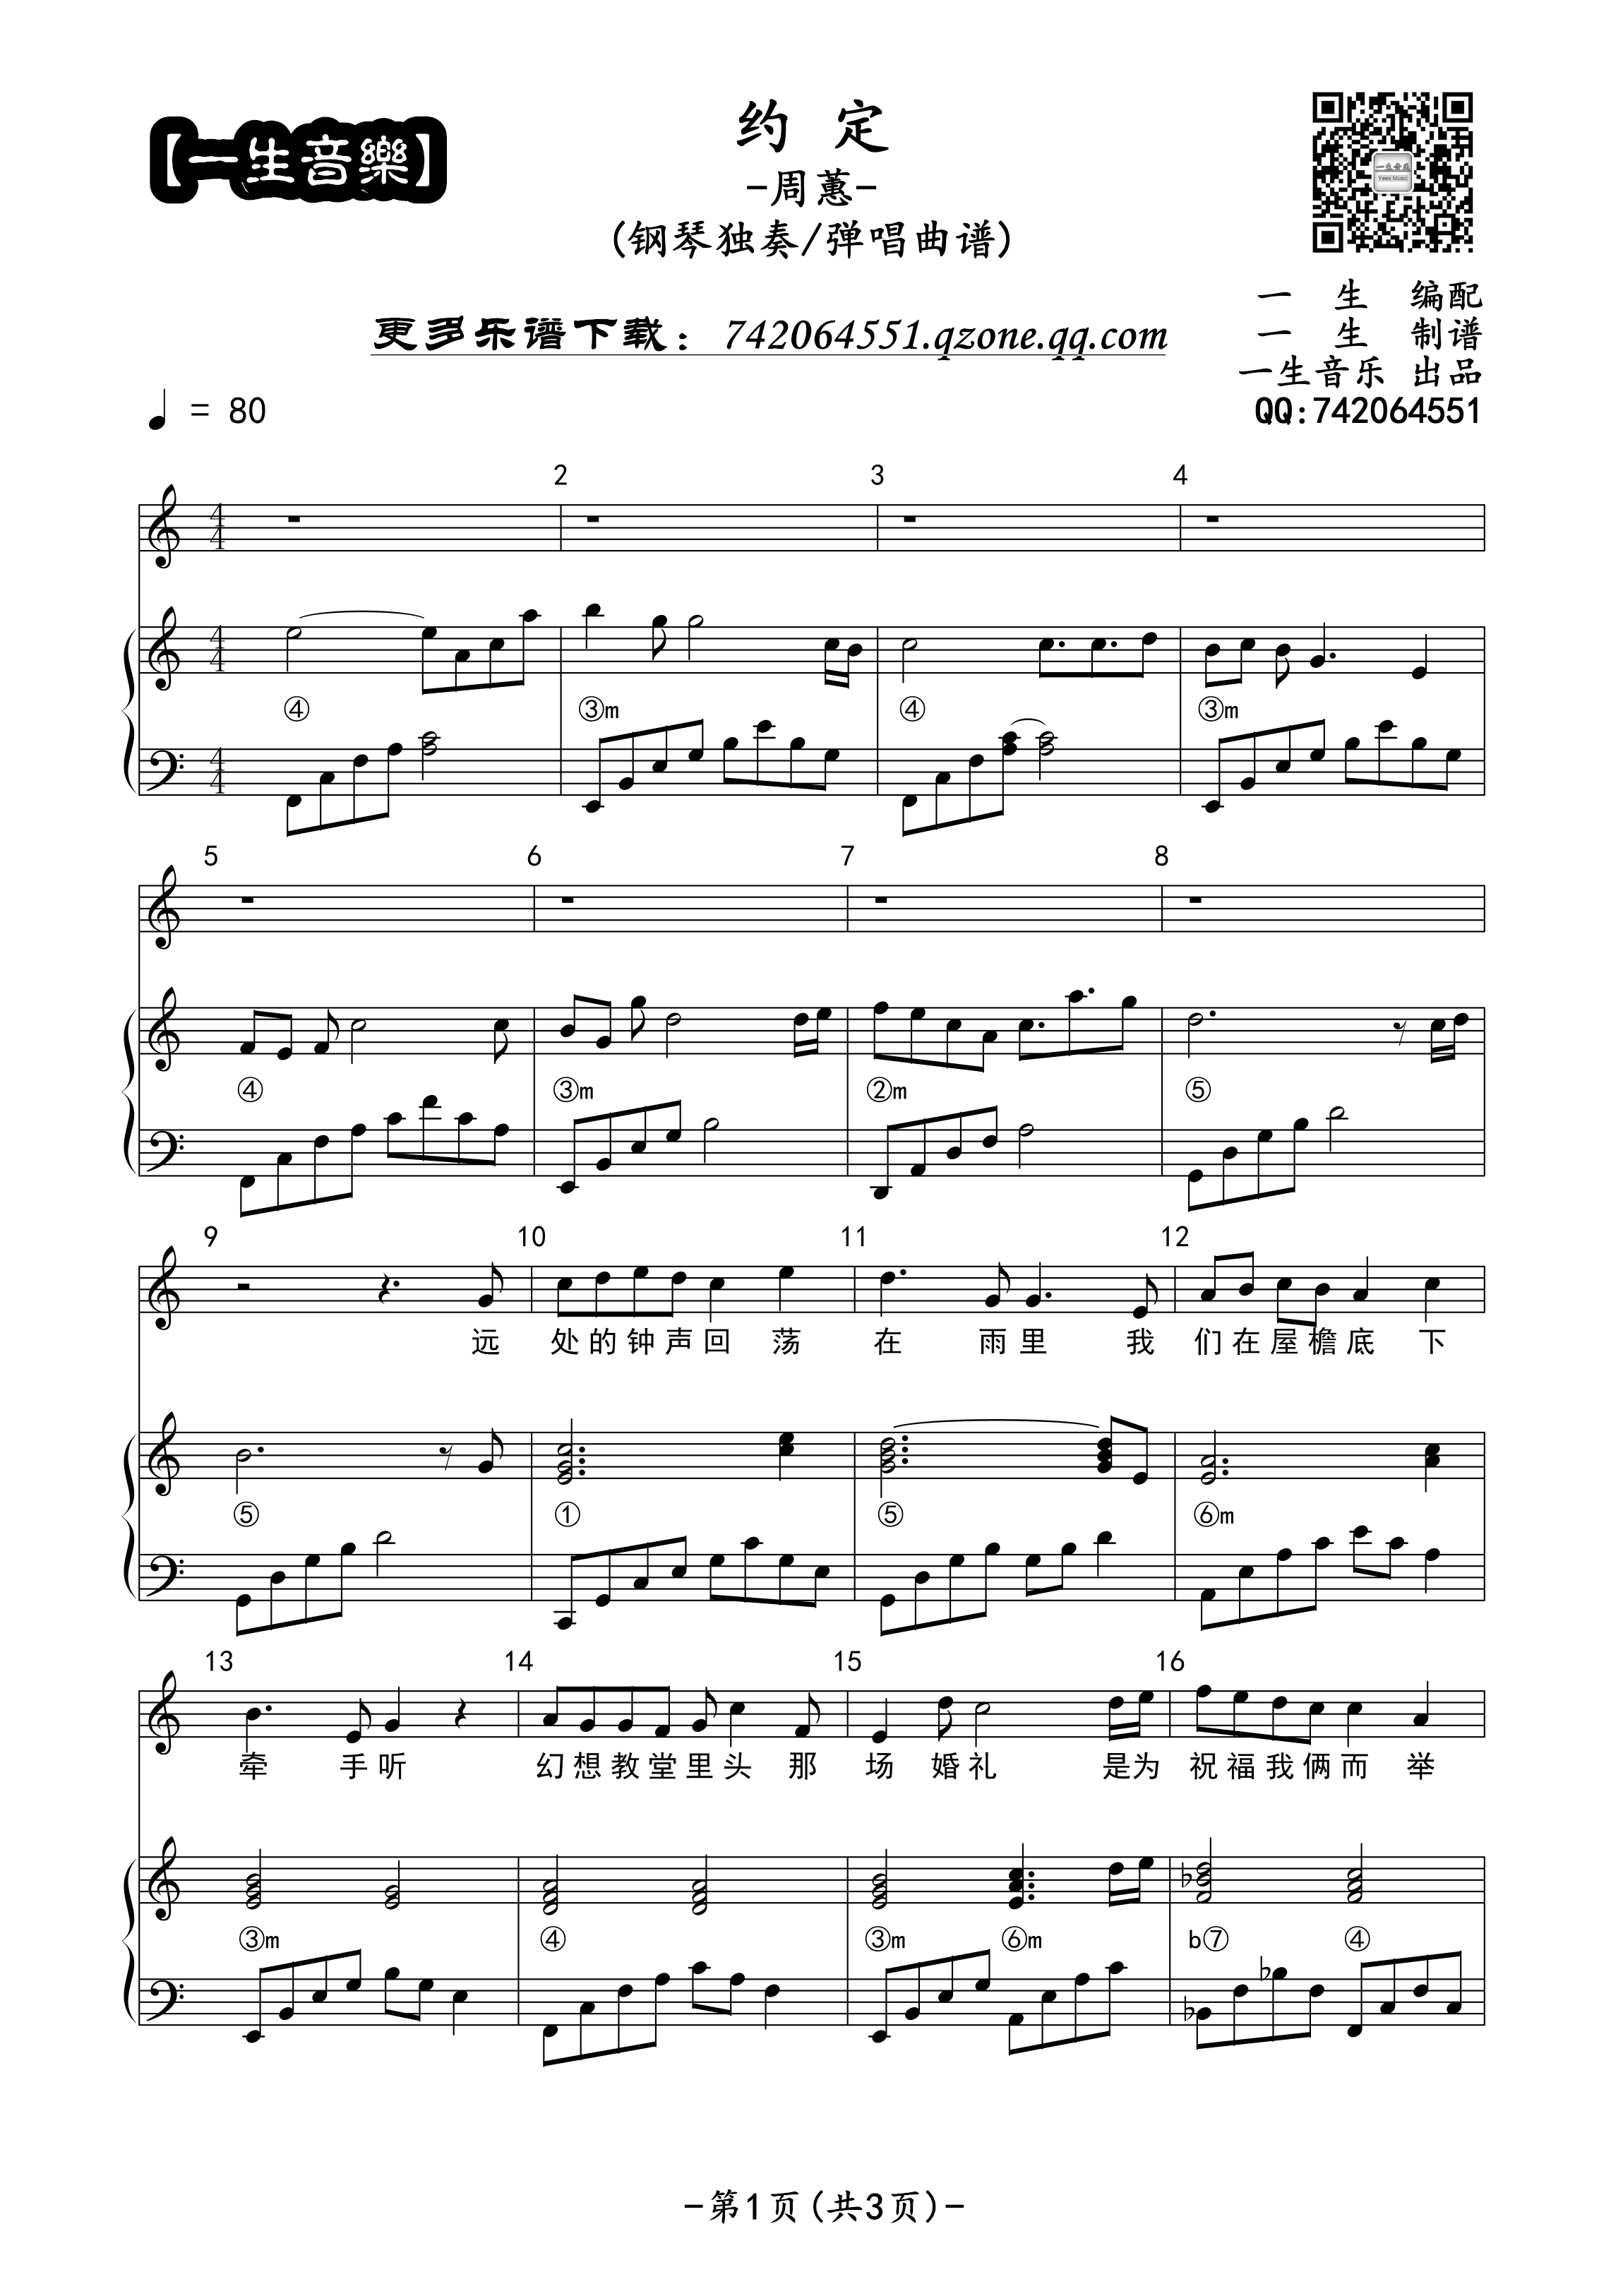 世界的约定-《哈尔的移动城堡》主题曲-钢琴谱文件（五线谱、双手简谱、数字谱、Midi、PDF）免费下载